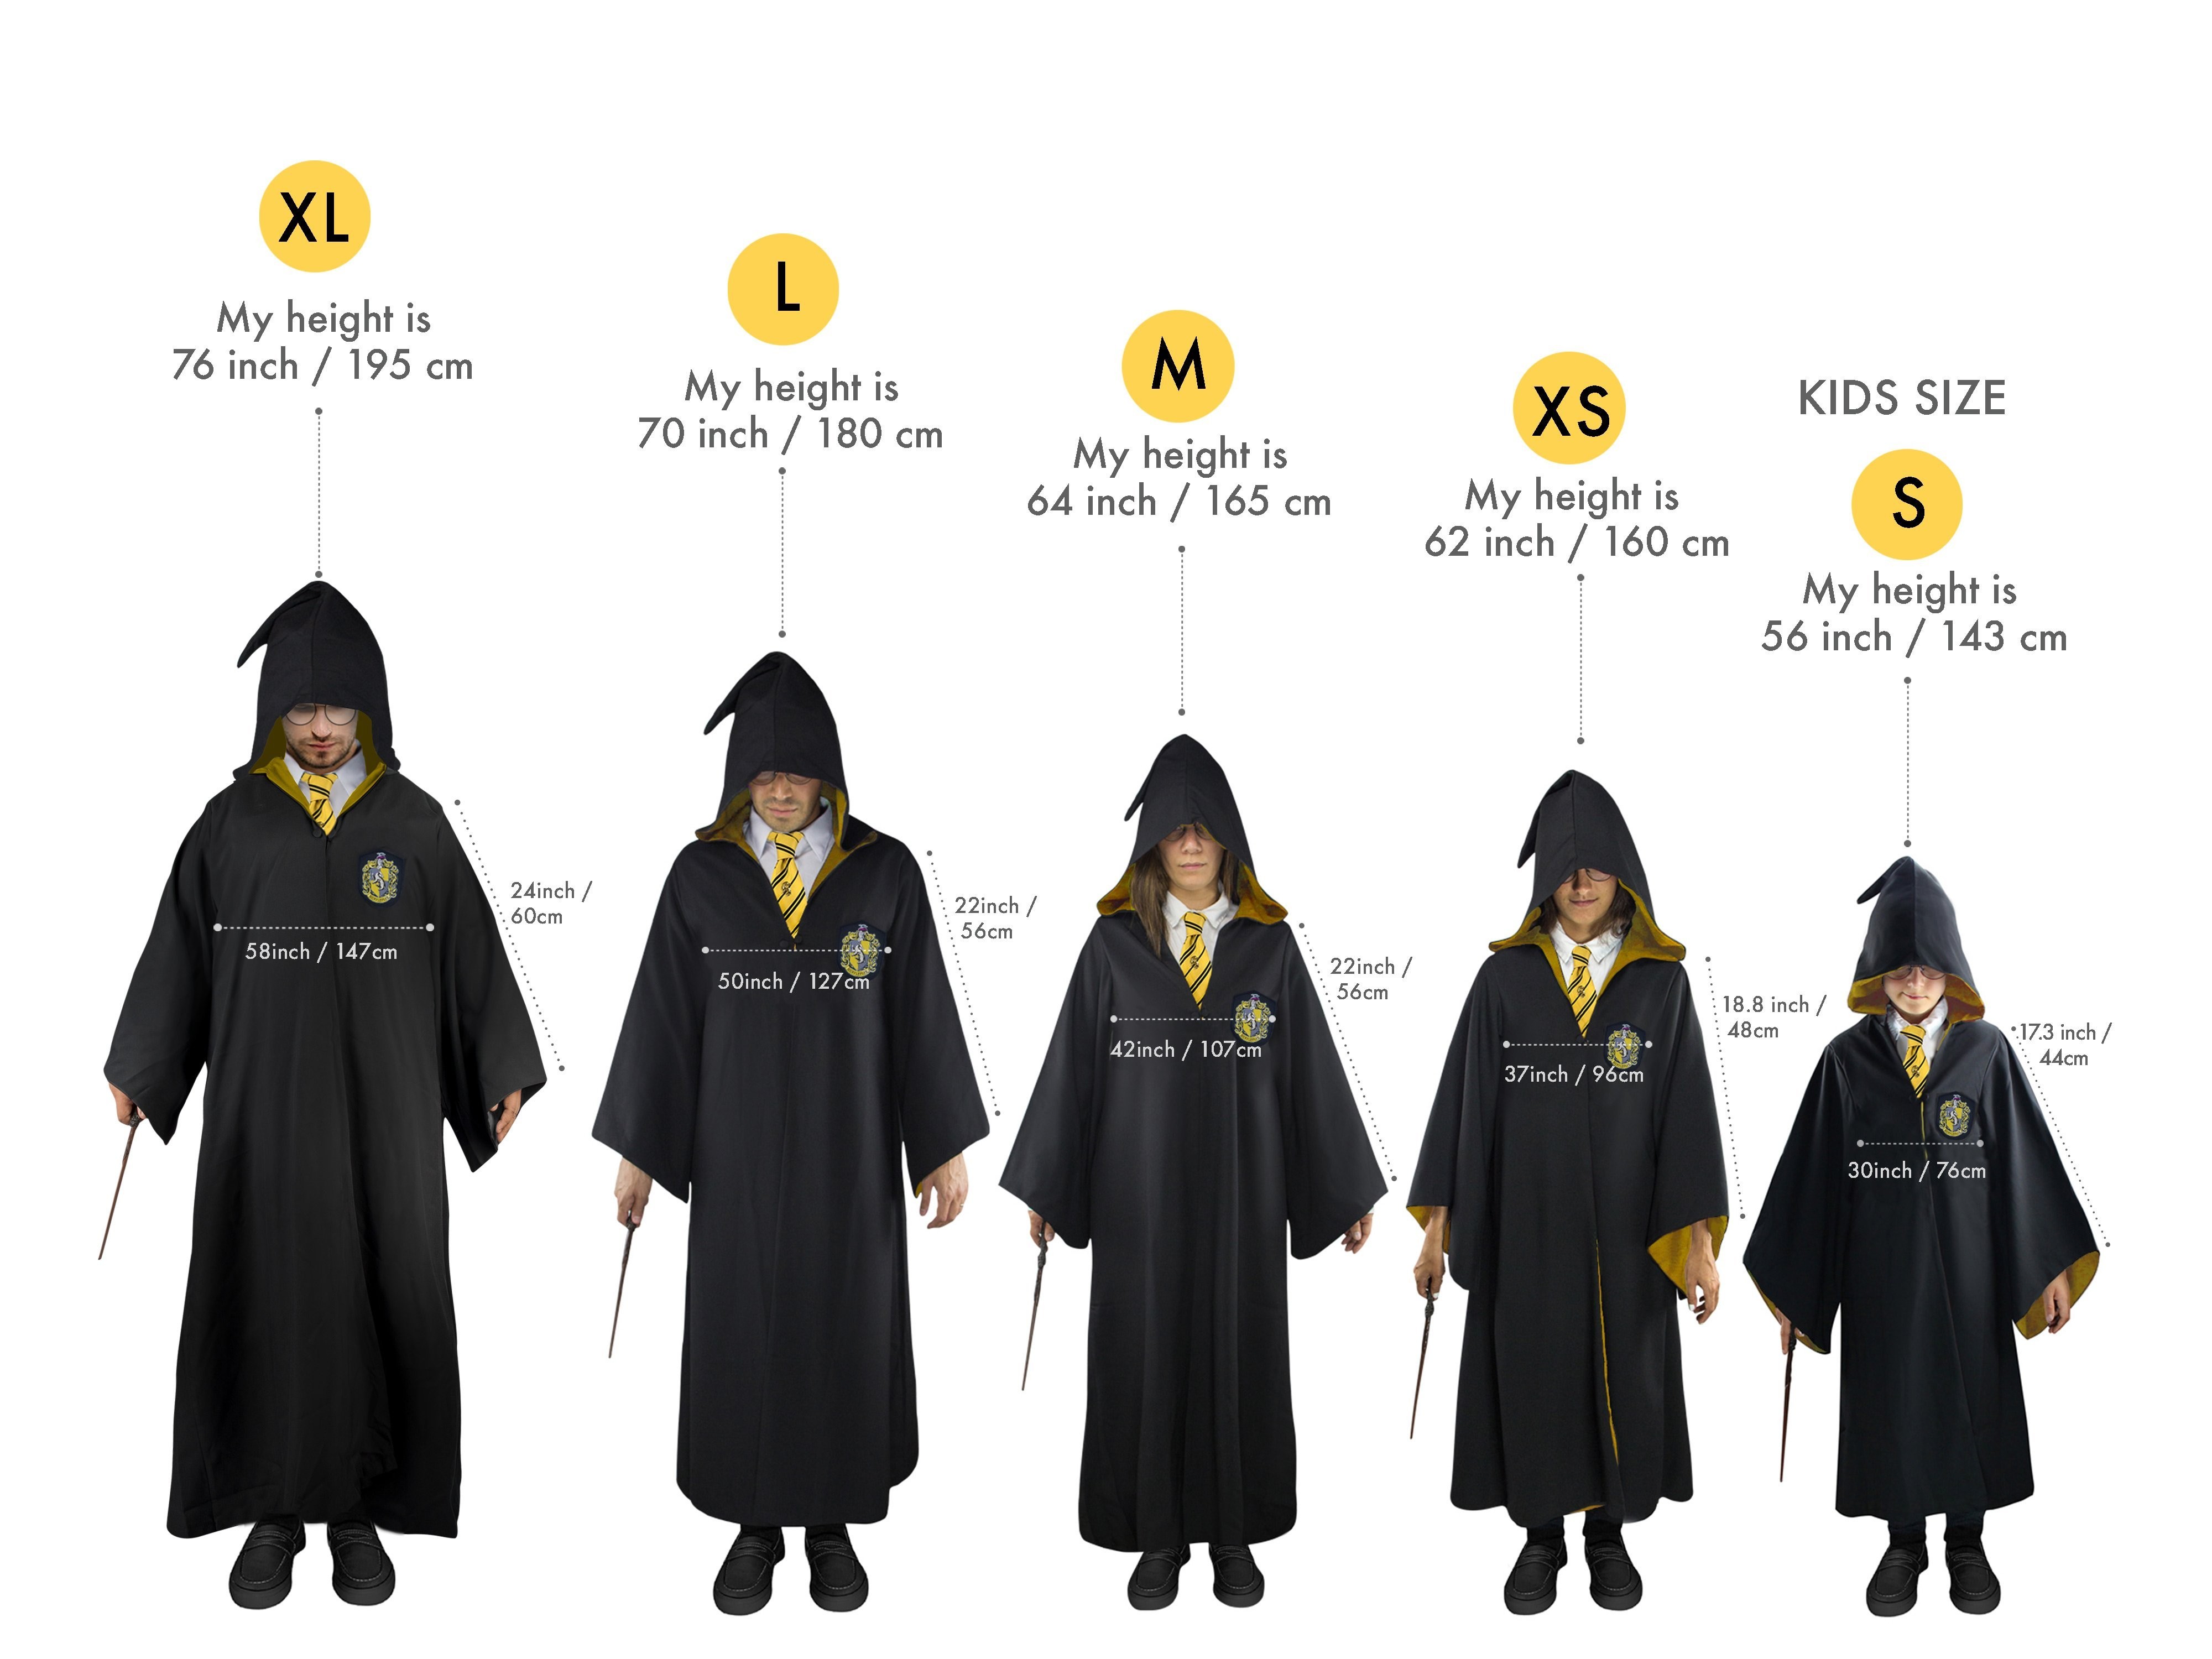 Robe de sorcier Poufsouffle - Harry Potter